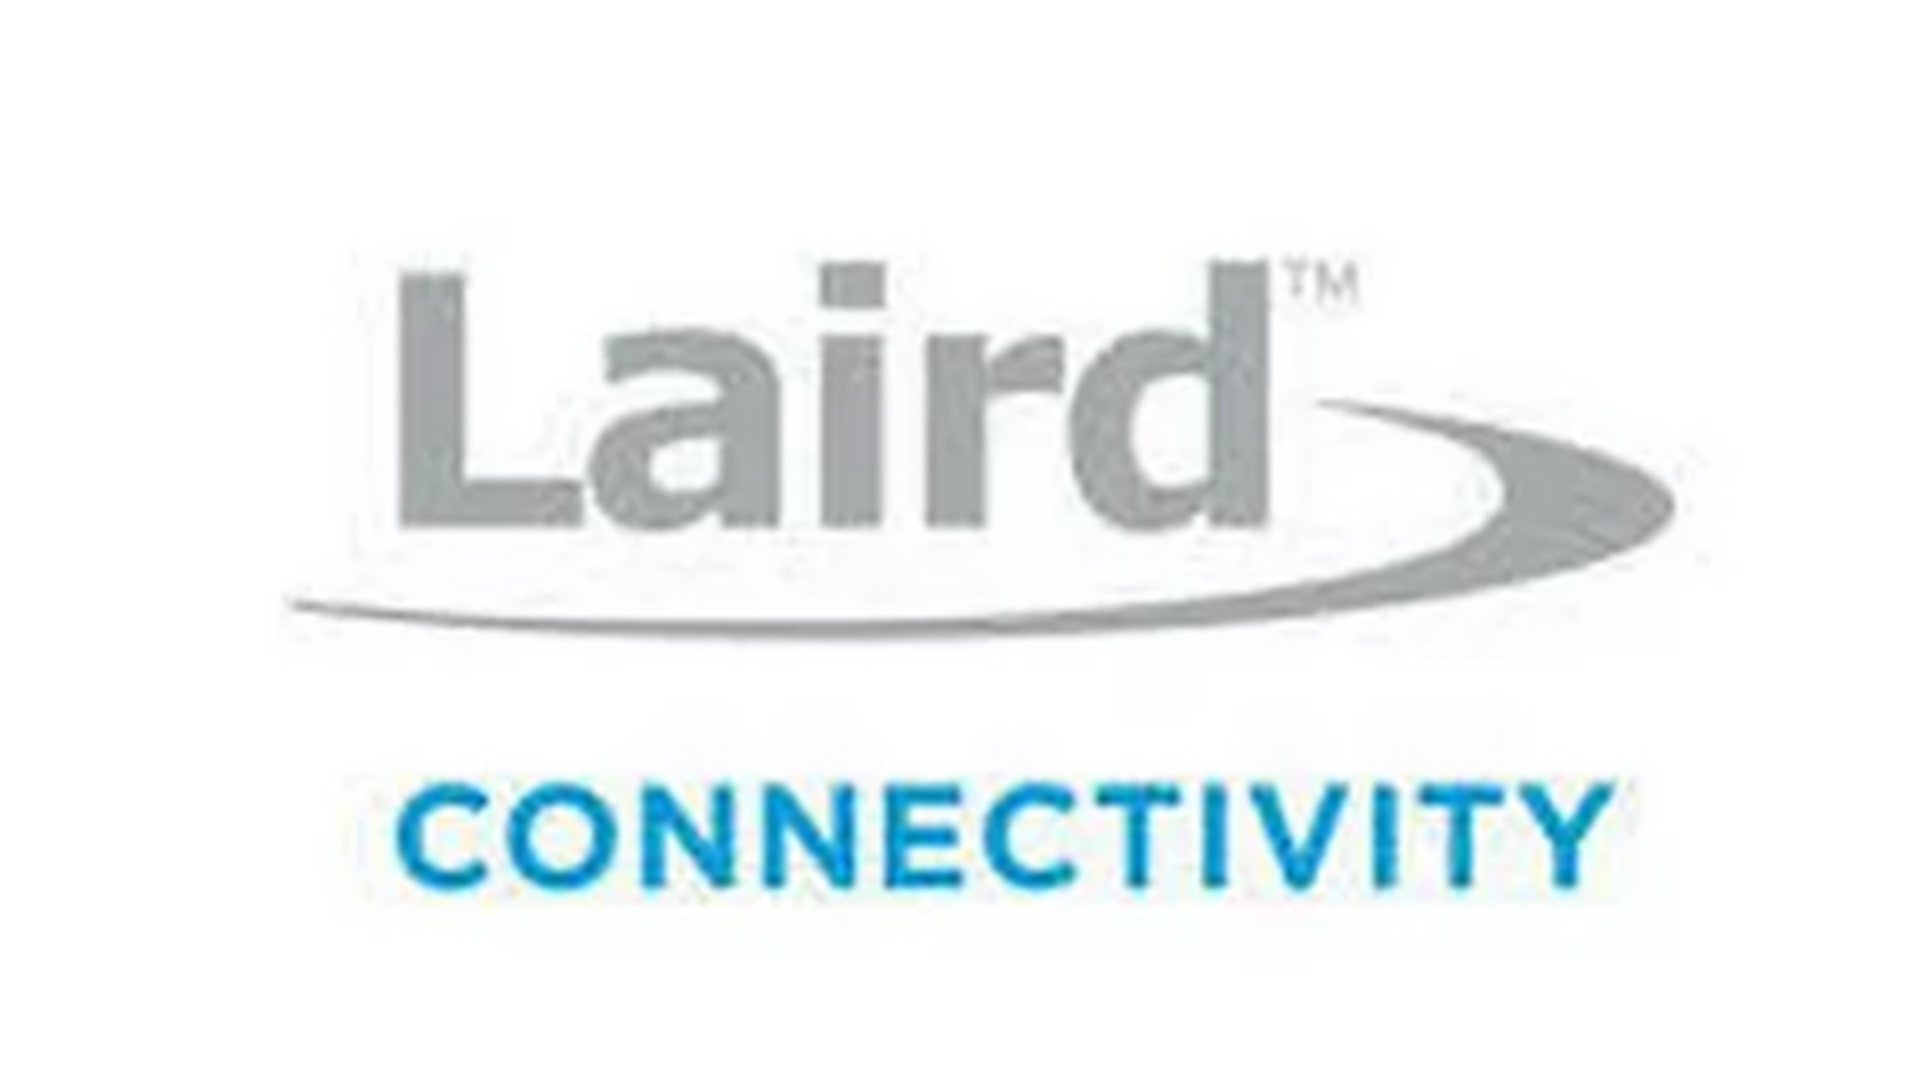 Laird connectivity logo 0d23ff2ff94f2359bd3e4e05cf370829